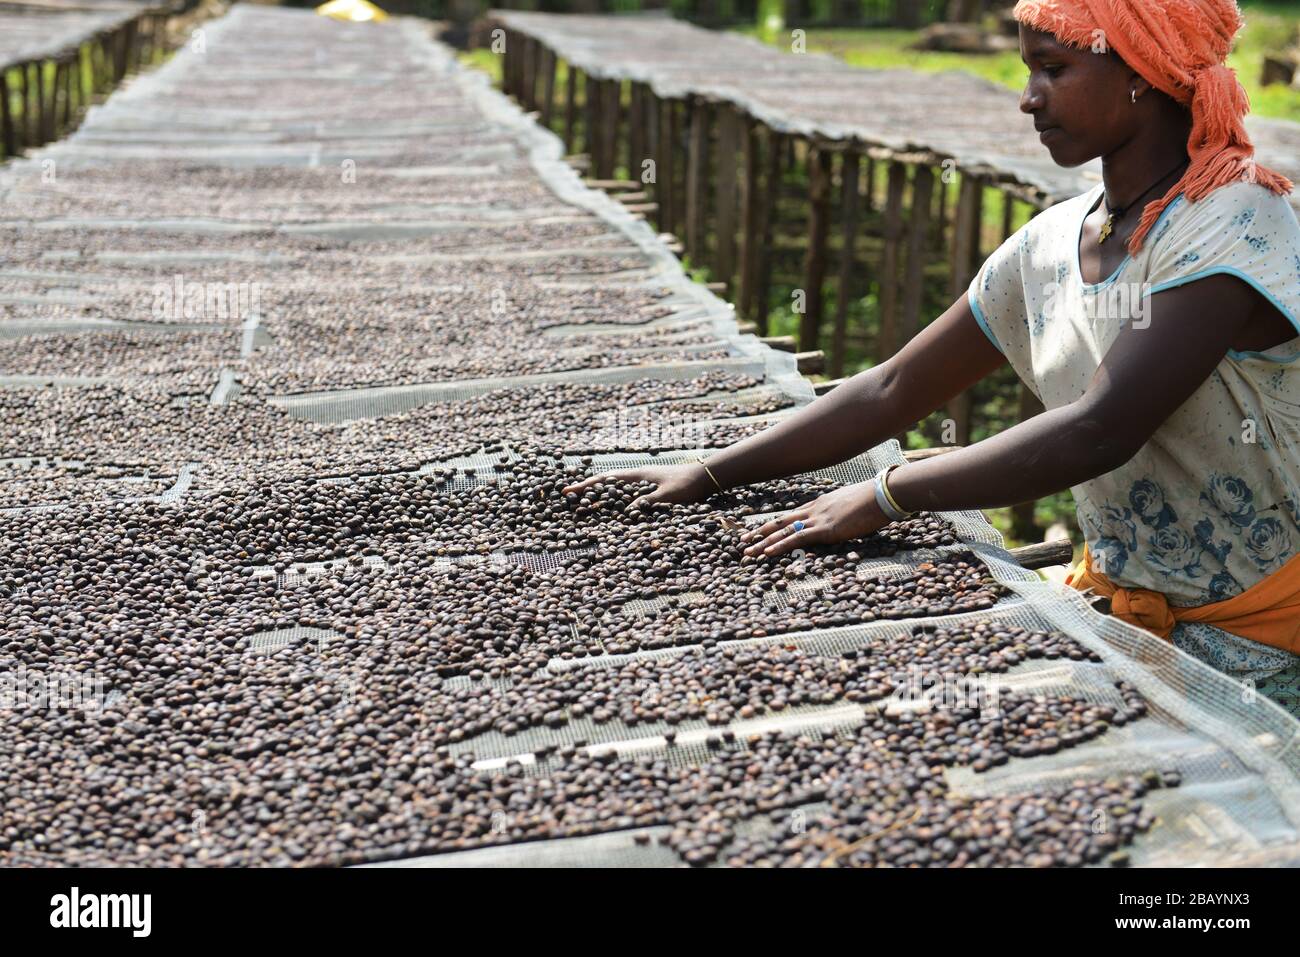 Kaffeebohnen werden sortiert und auf Trockenbetten in Tega&Tula-Kaffeeanwesen in der Region Kaffa in Äthiopien getrocknet. Stockfoto